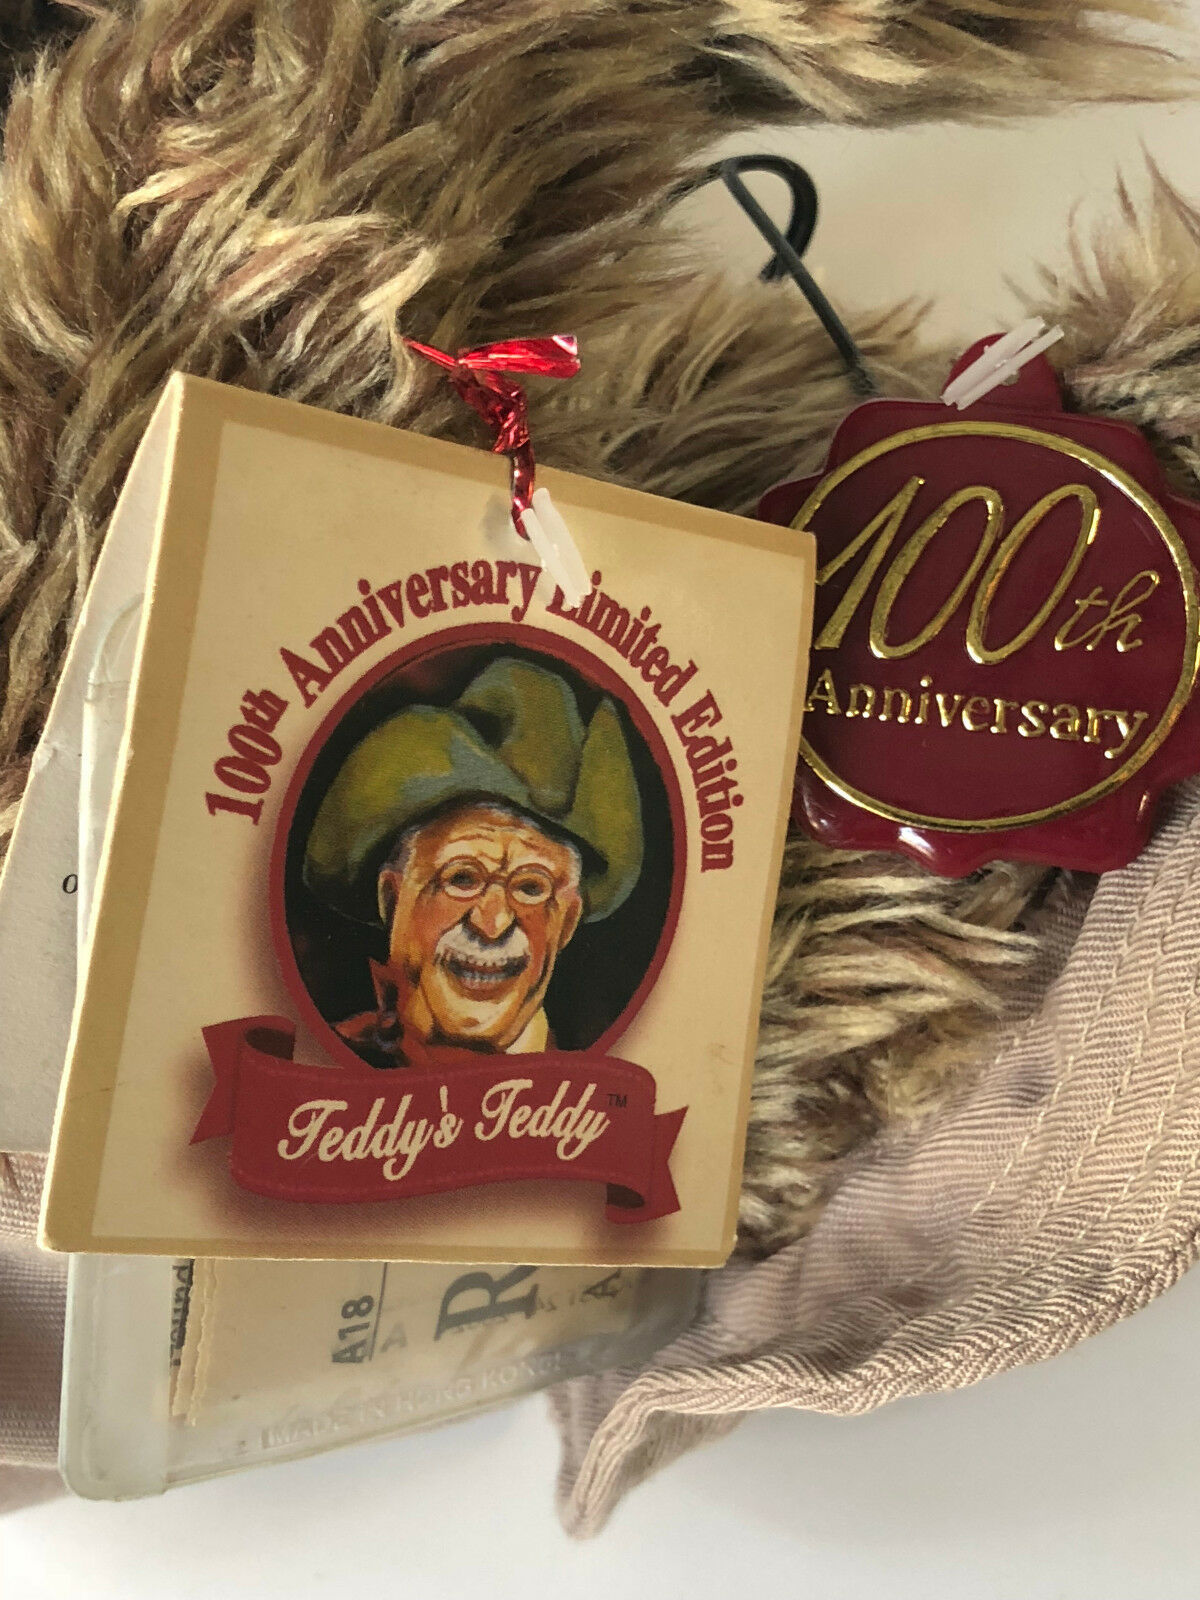 teddy's teddy 100th anniversary limited edition